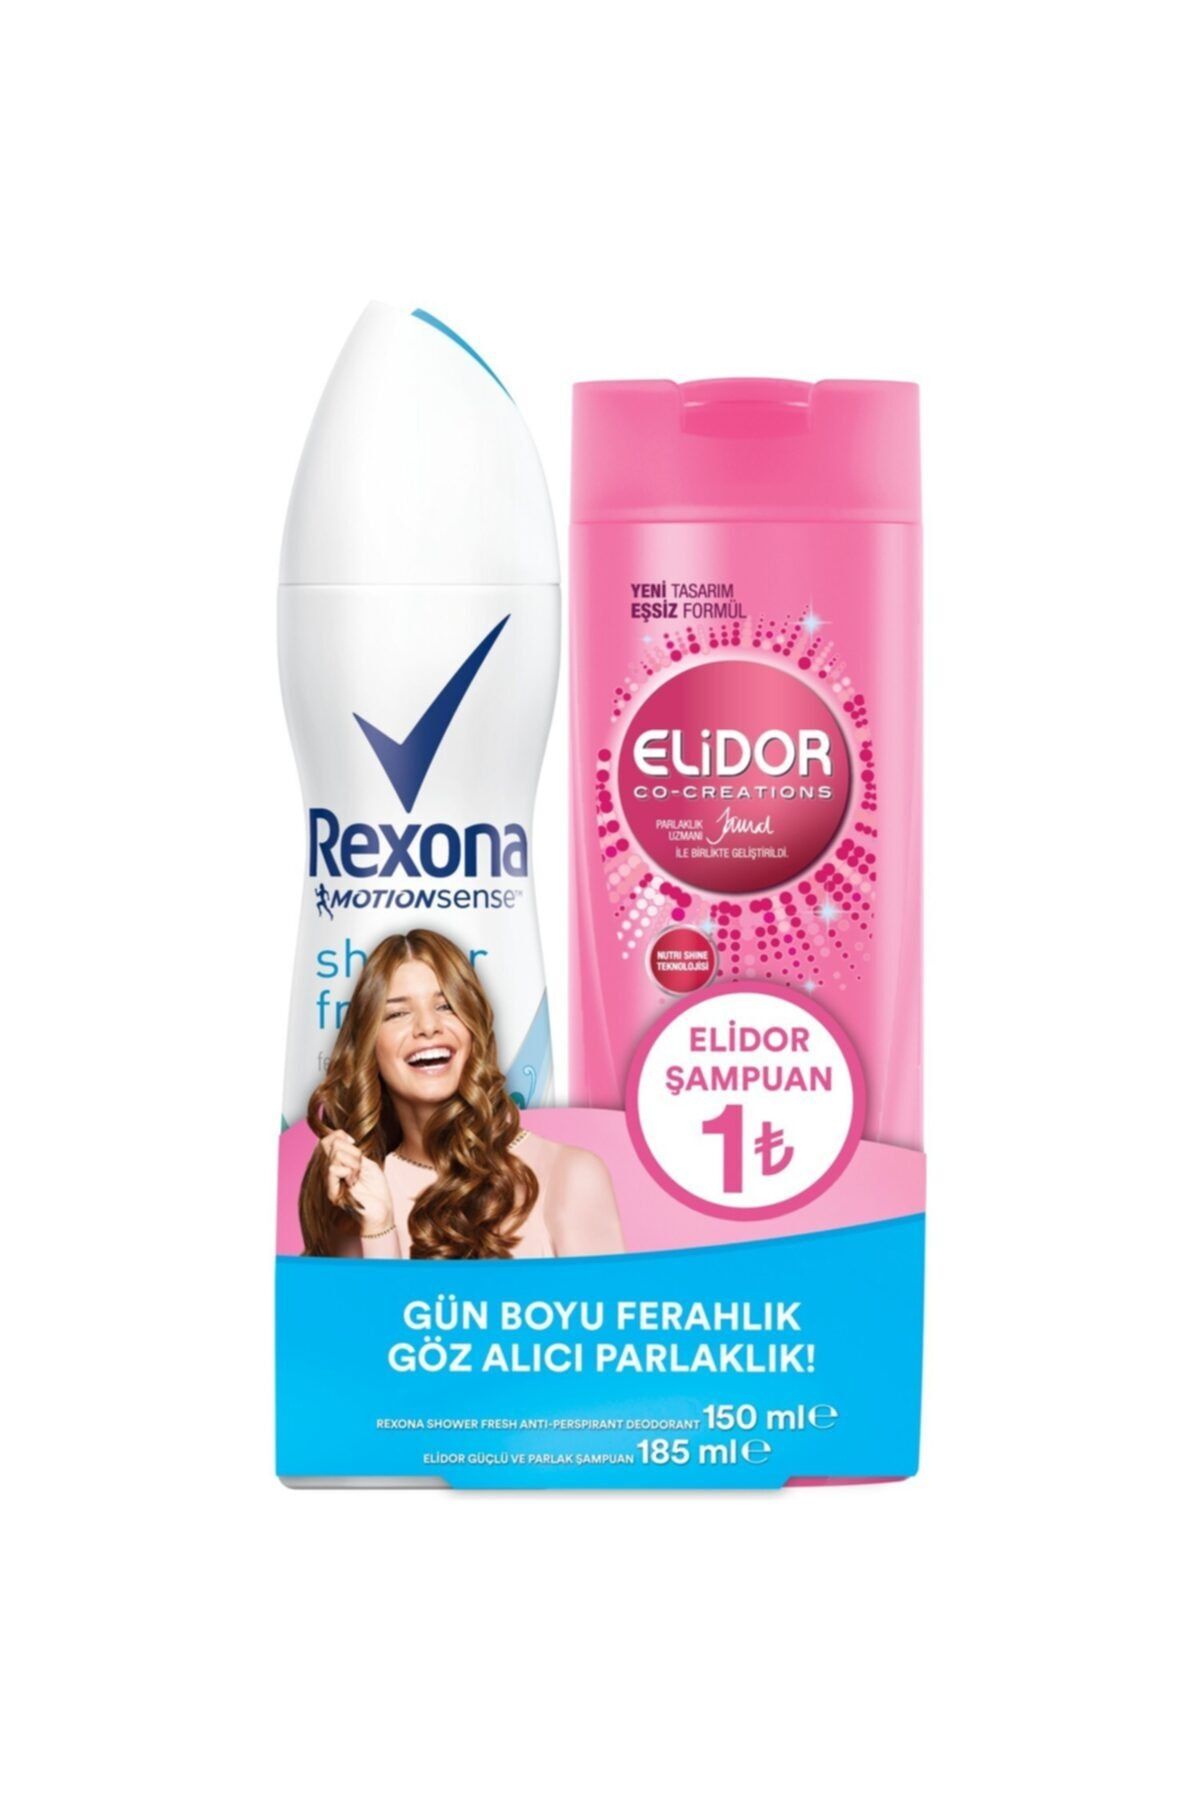 Rexona Motıonsense Shower Fresh Sprey Deodorant + Elidor Güçlü & Parlak Şampuan